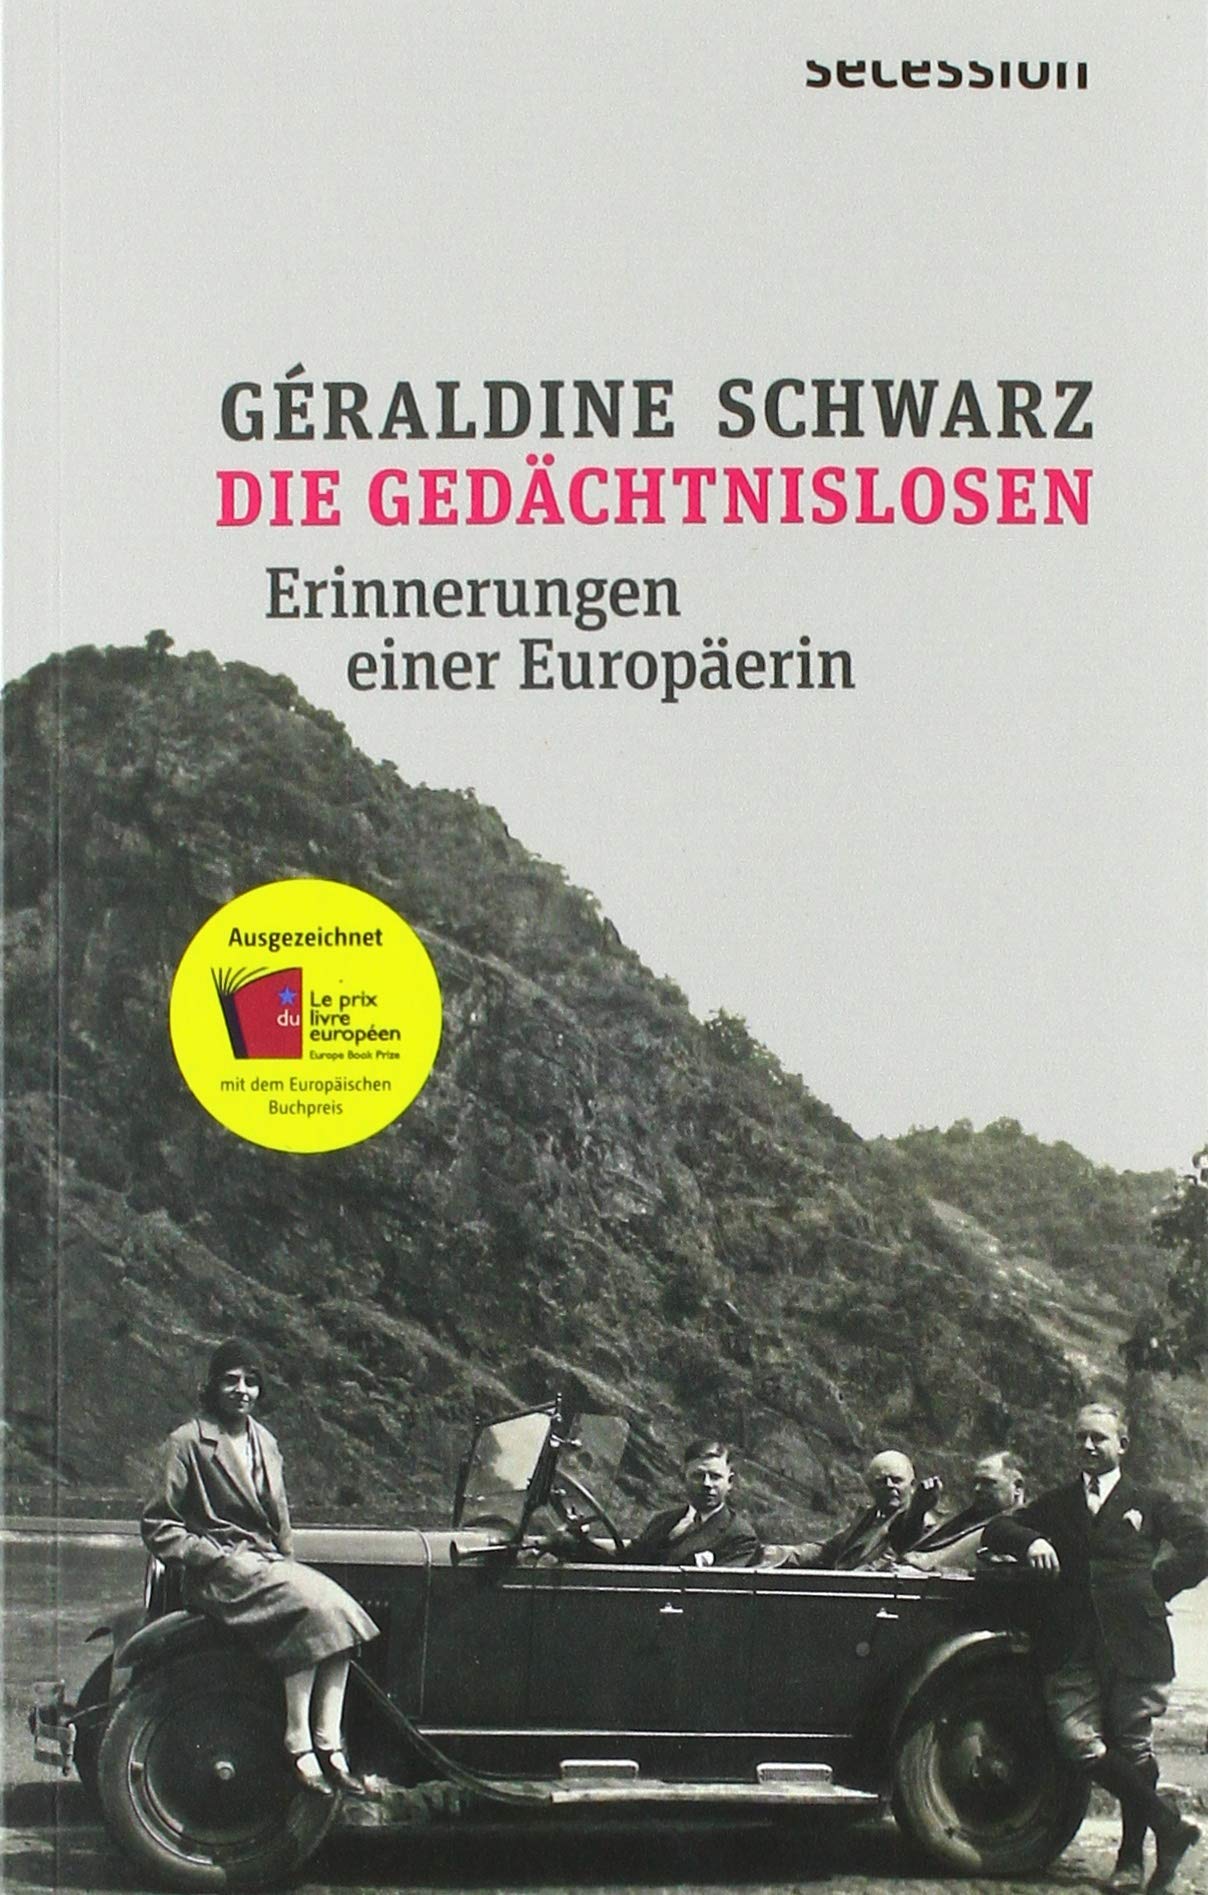 Couverture du livre Die Gedächtnislosen de Géraldine Schwarz. Photo en noir et blanc ancienne, sans doute des années 30, montrant 5 personnes dont une femme regroupées autour d'une voiture.